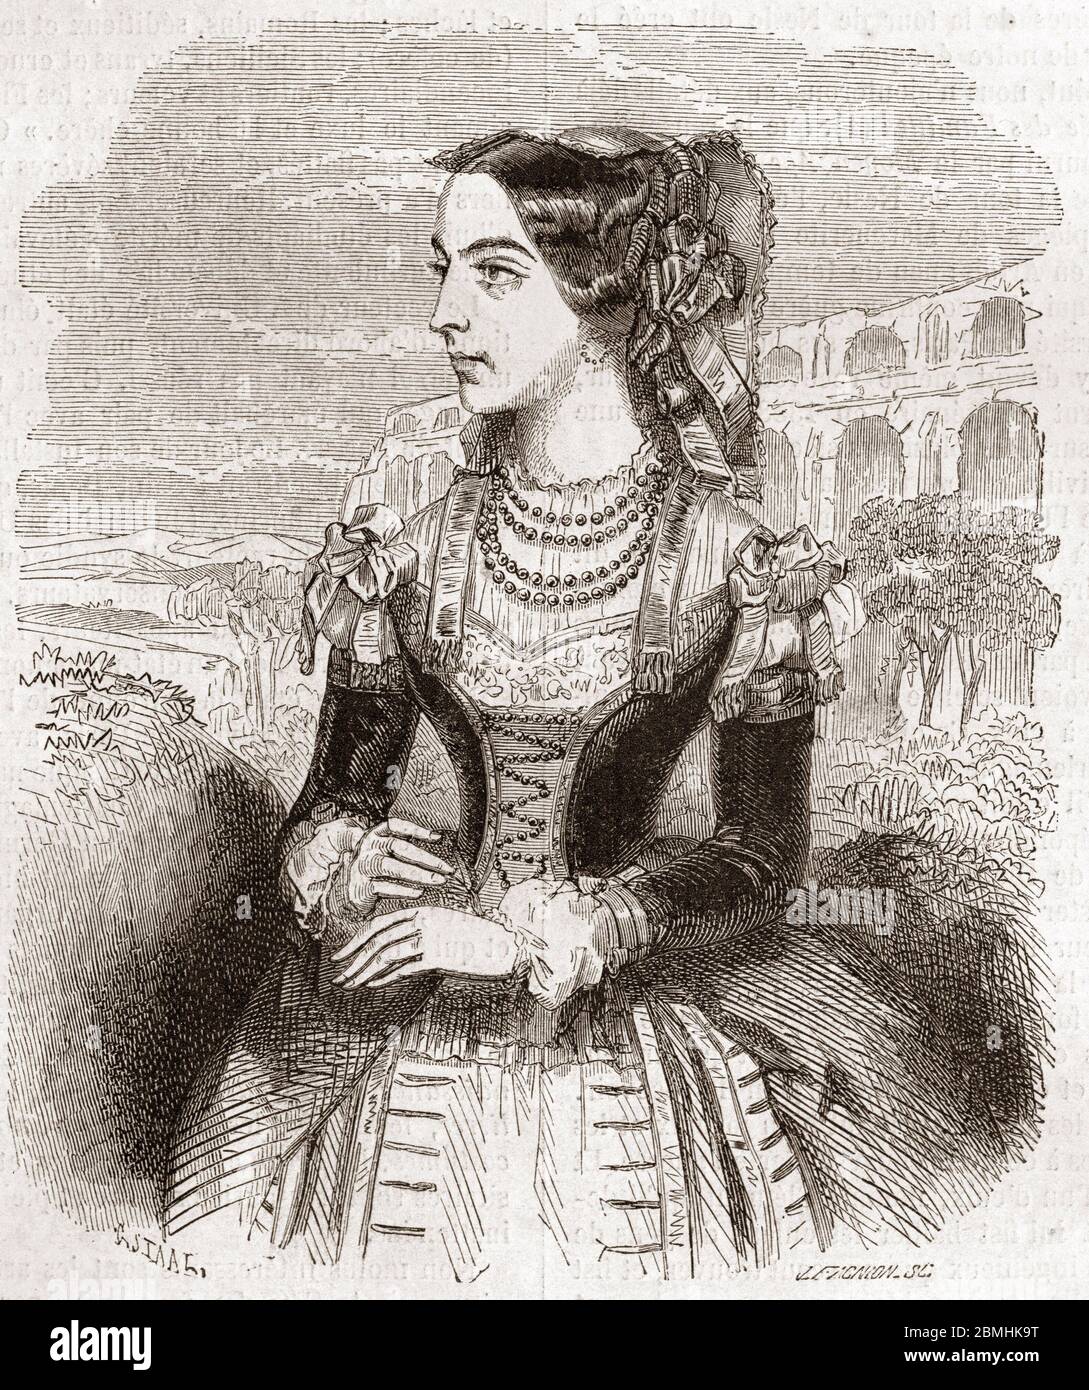 Portrait de Caroline Duprez (1832-1875) comedienne de theatre et chanteuse - Gravure - Portrait of Caroline Duprez (Dupre) comedian and singer - Engra Stock Photo